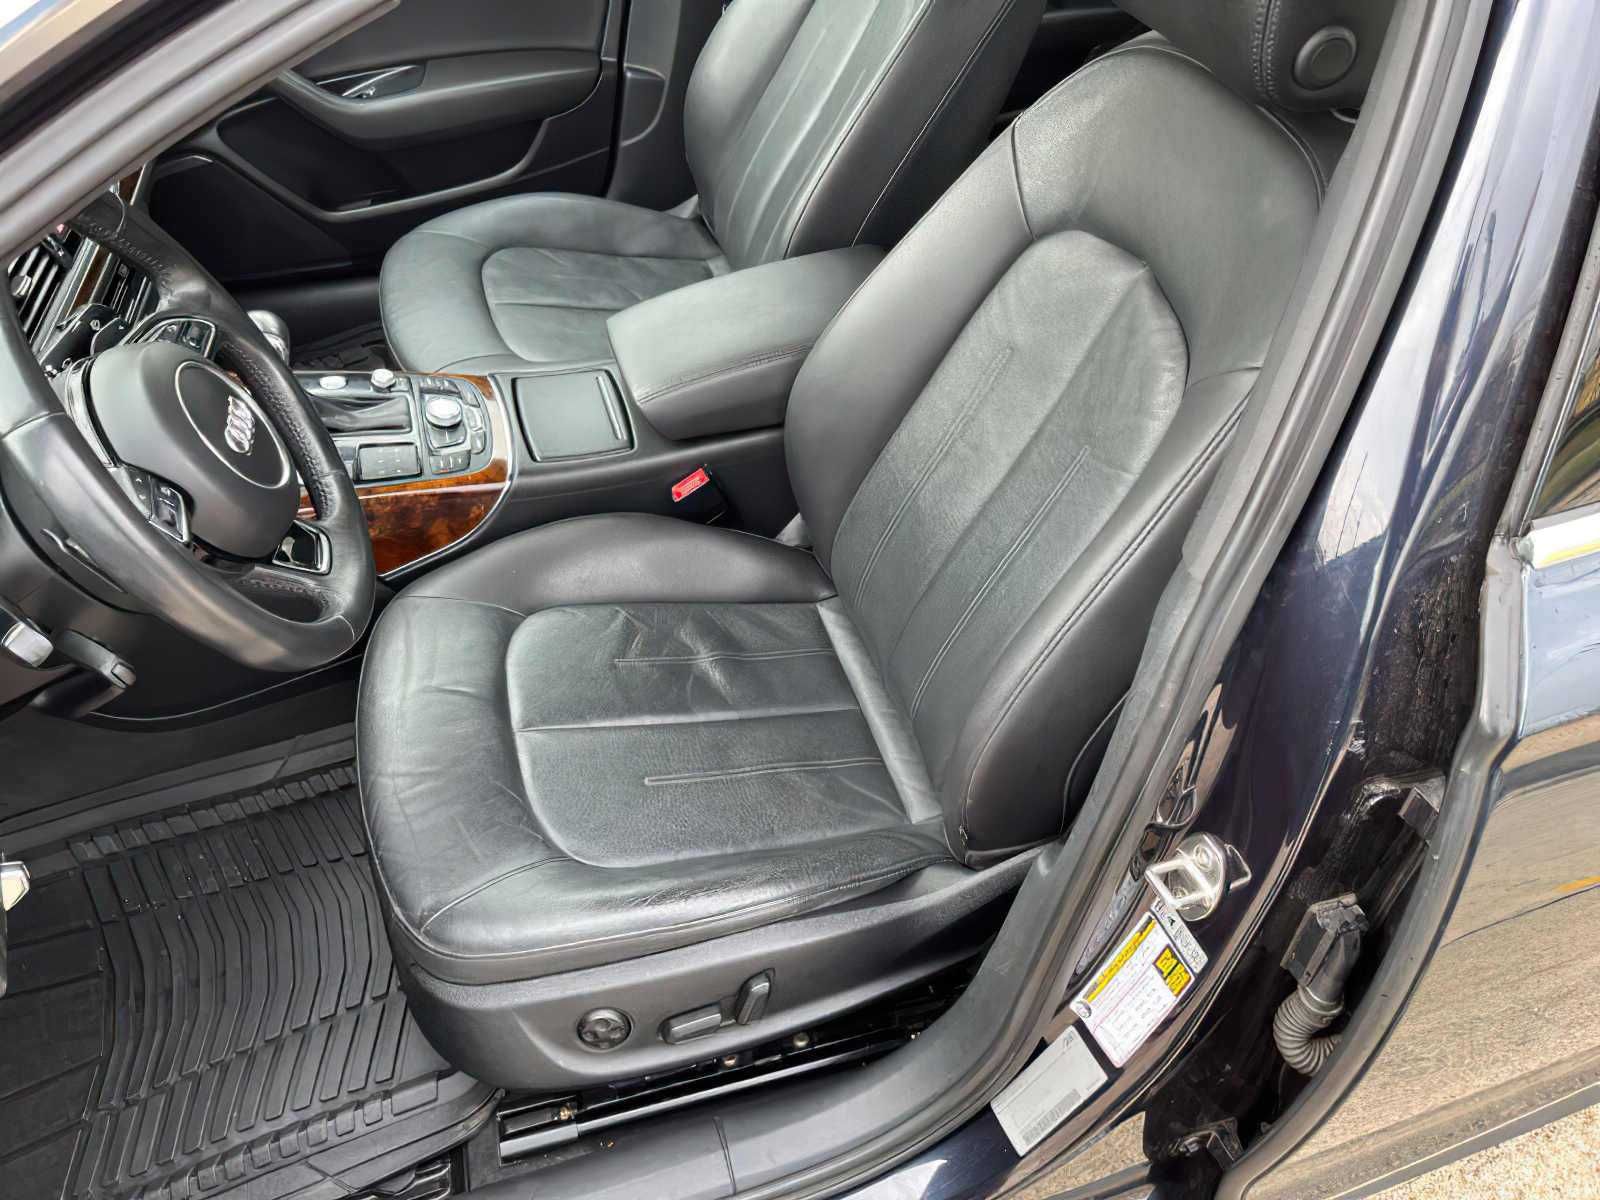 2015 Audi A6 3.0T quattro Premium Plus